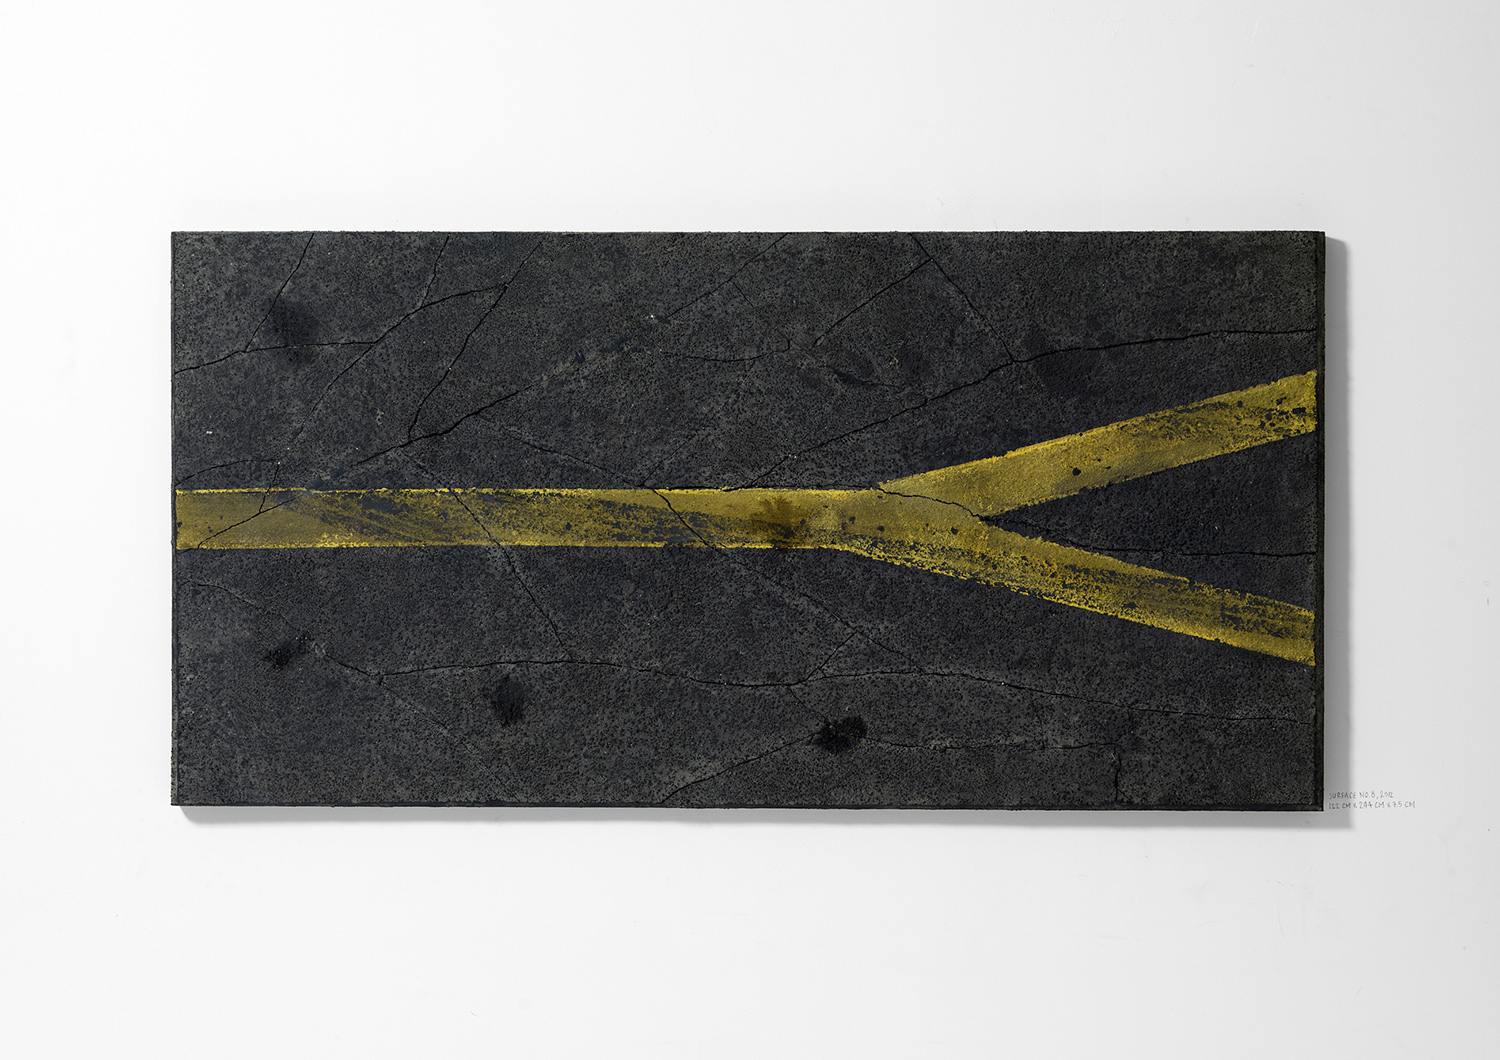   Surface No. 8 , 2012  122 cm x 244 cm x 7.5 cm 